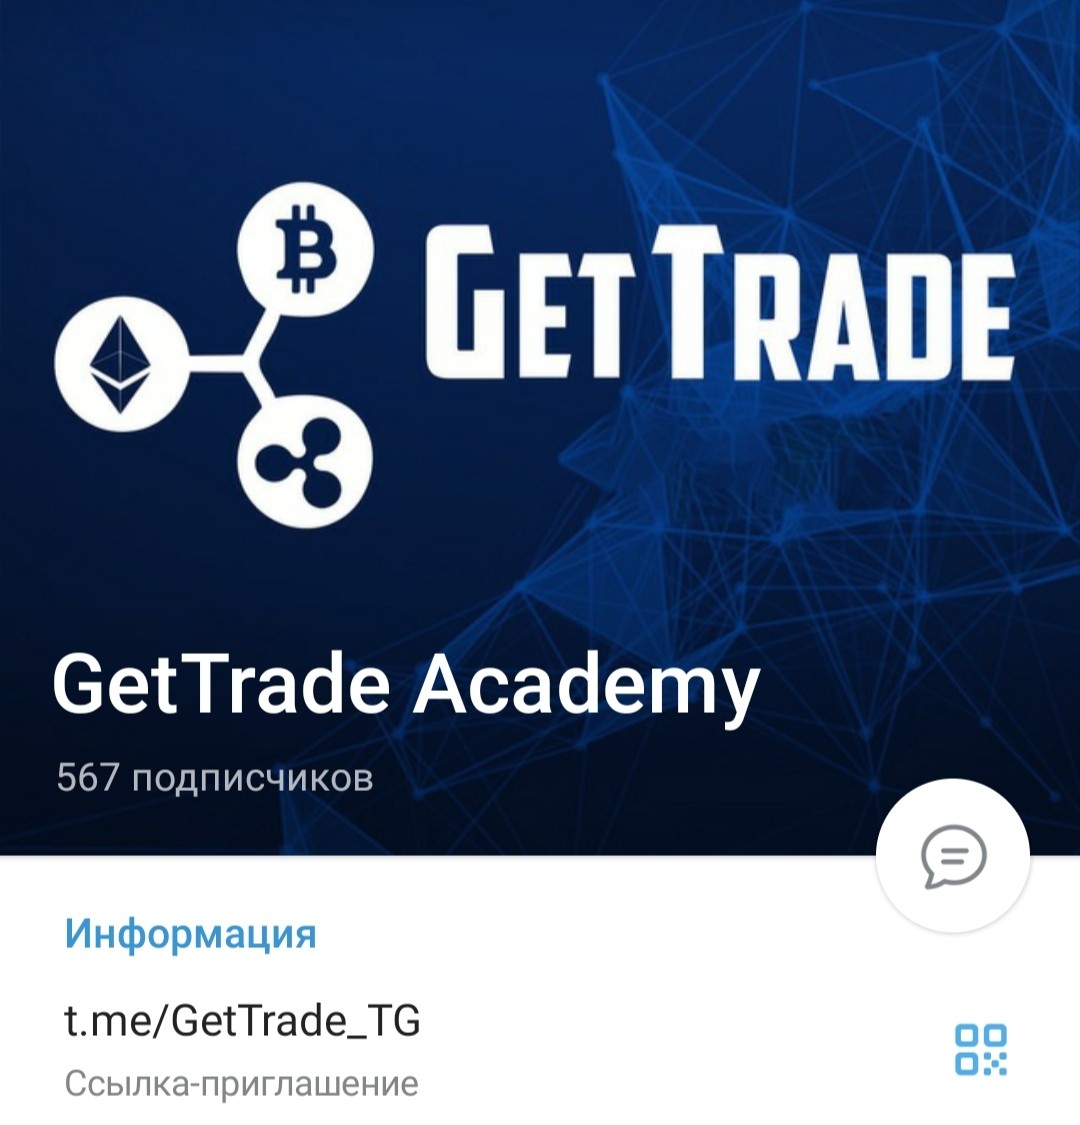 Телеграм GetTrade Academy